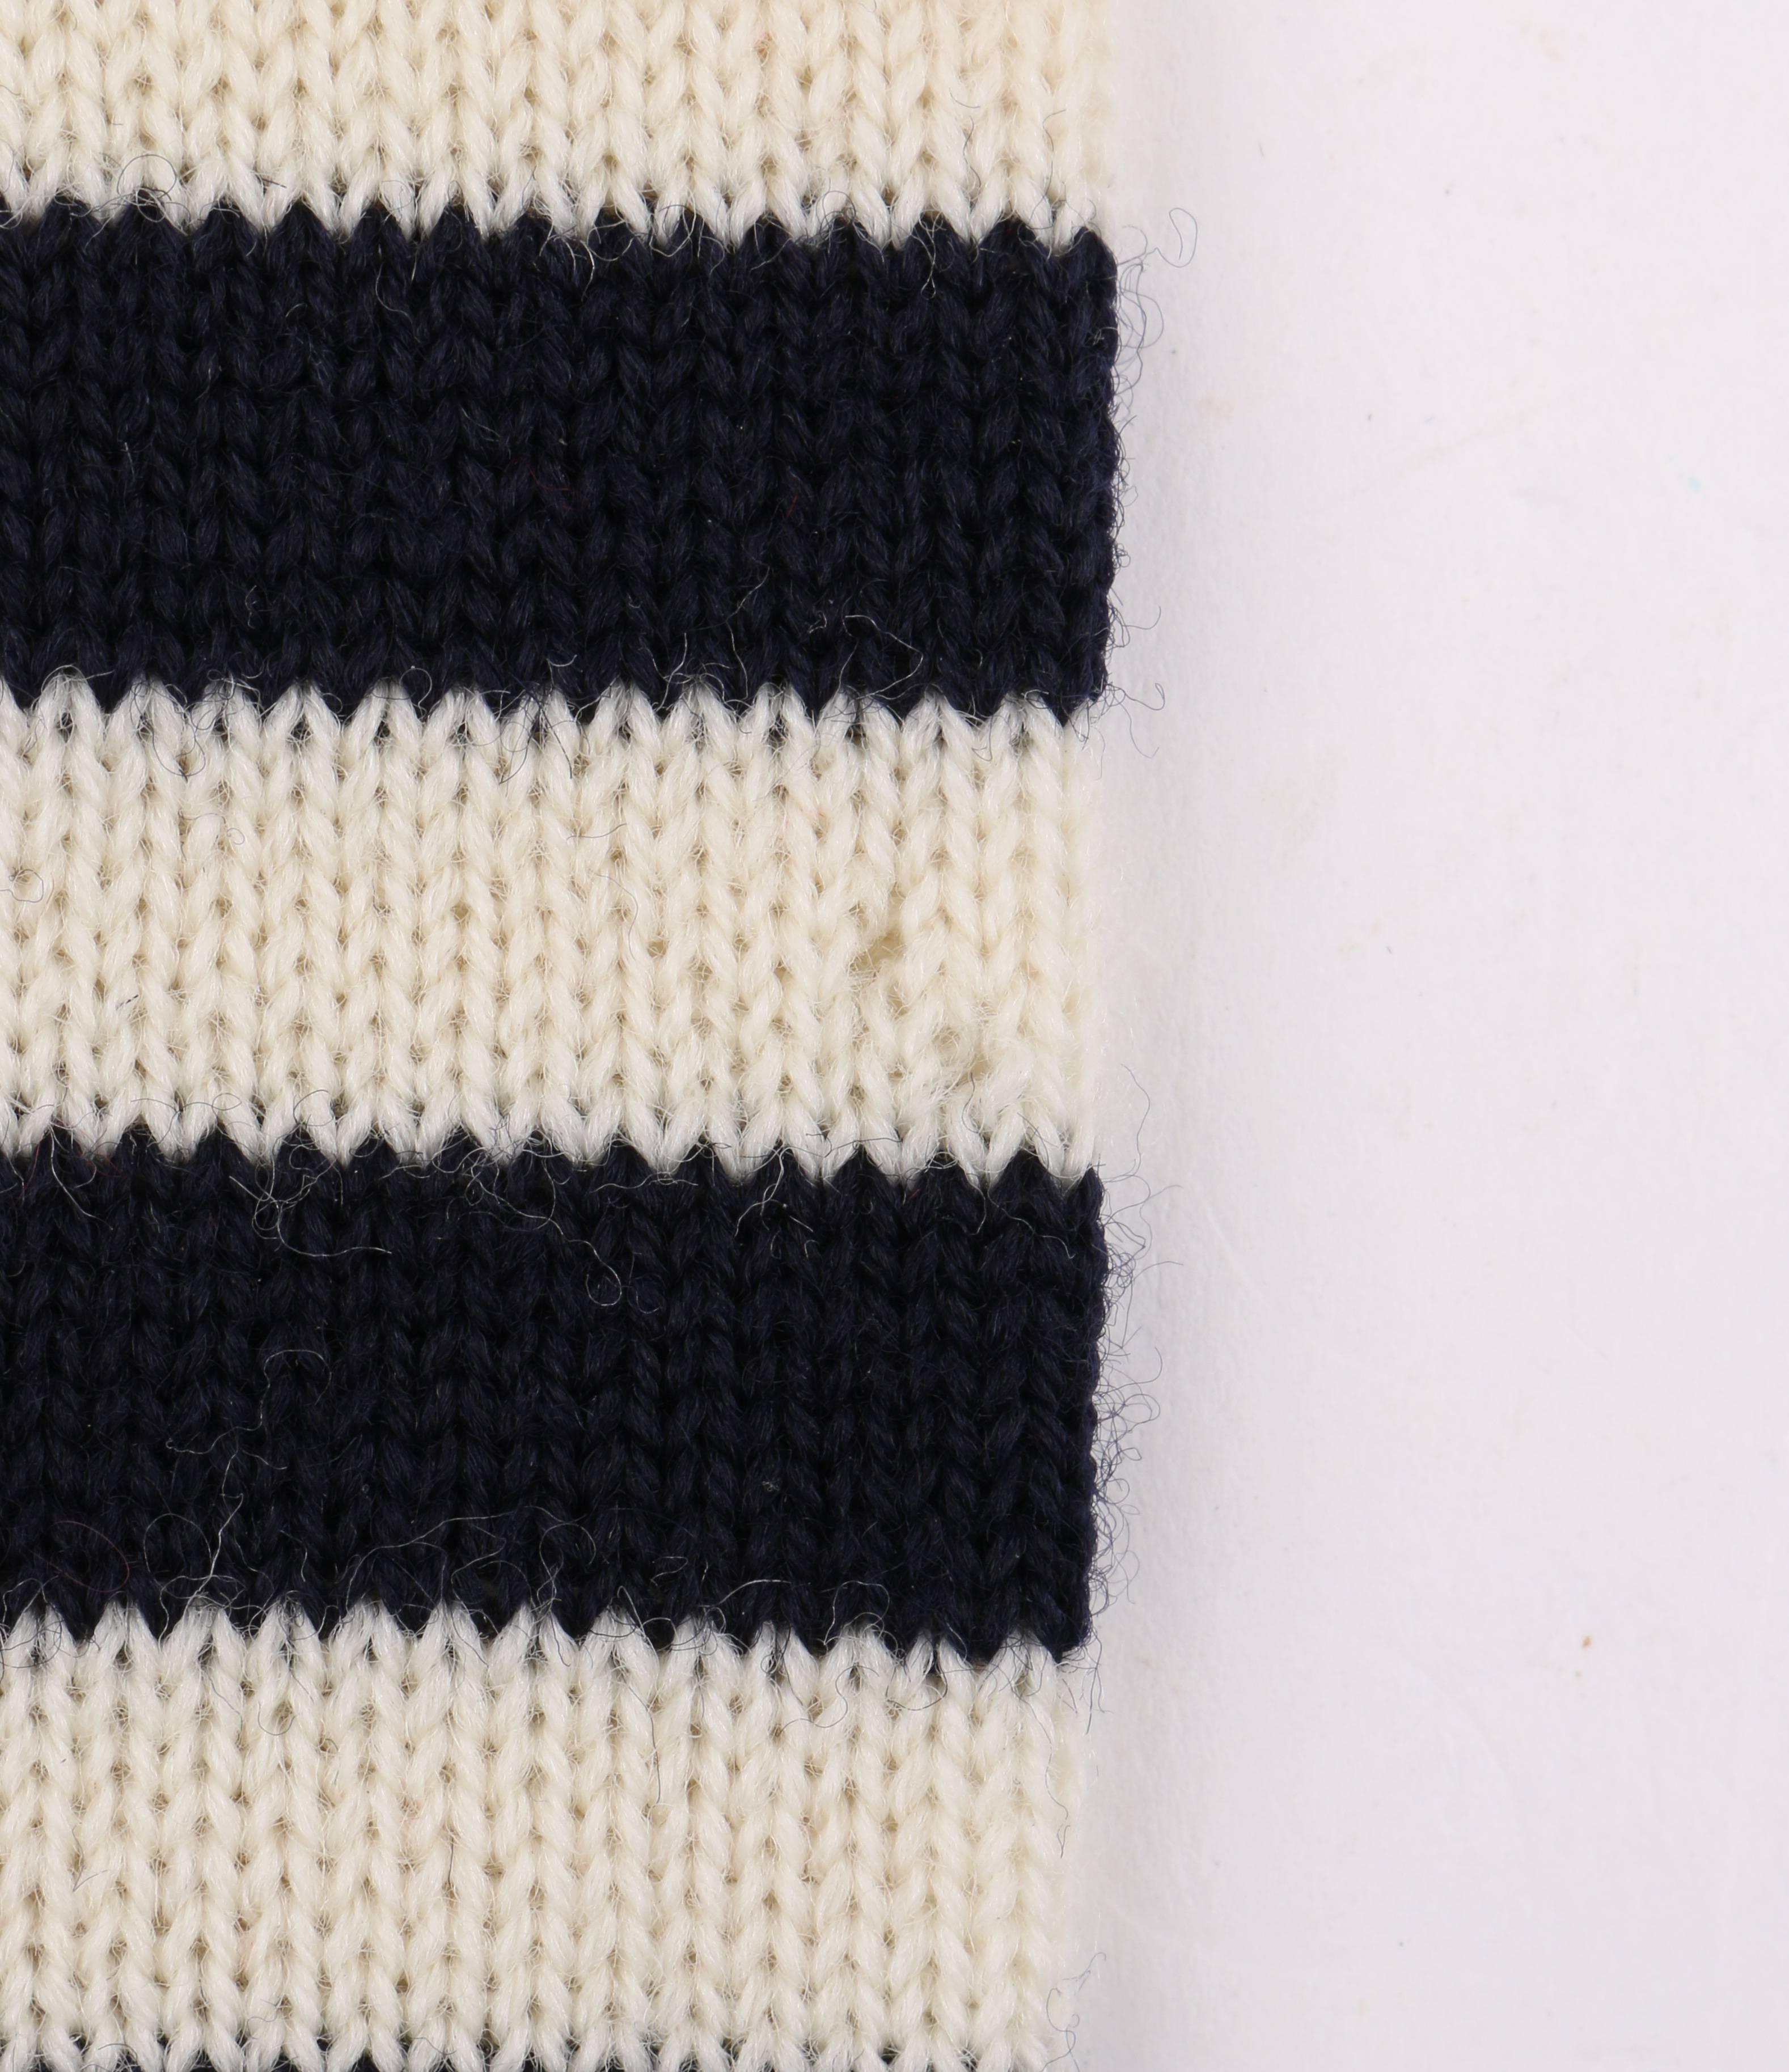 GUCCI c.1980's Navy Blue & Off White Striped Wool Knit Necktie Tie NOS 2